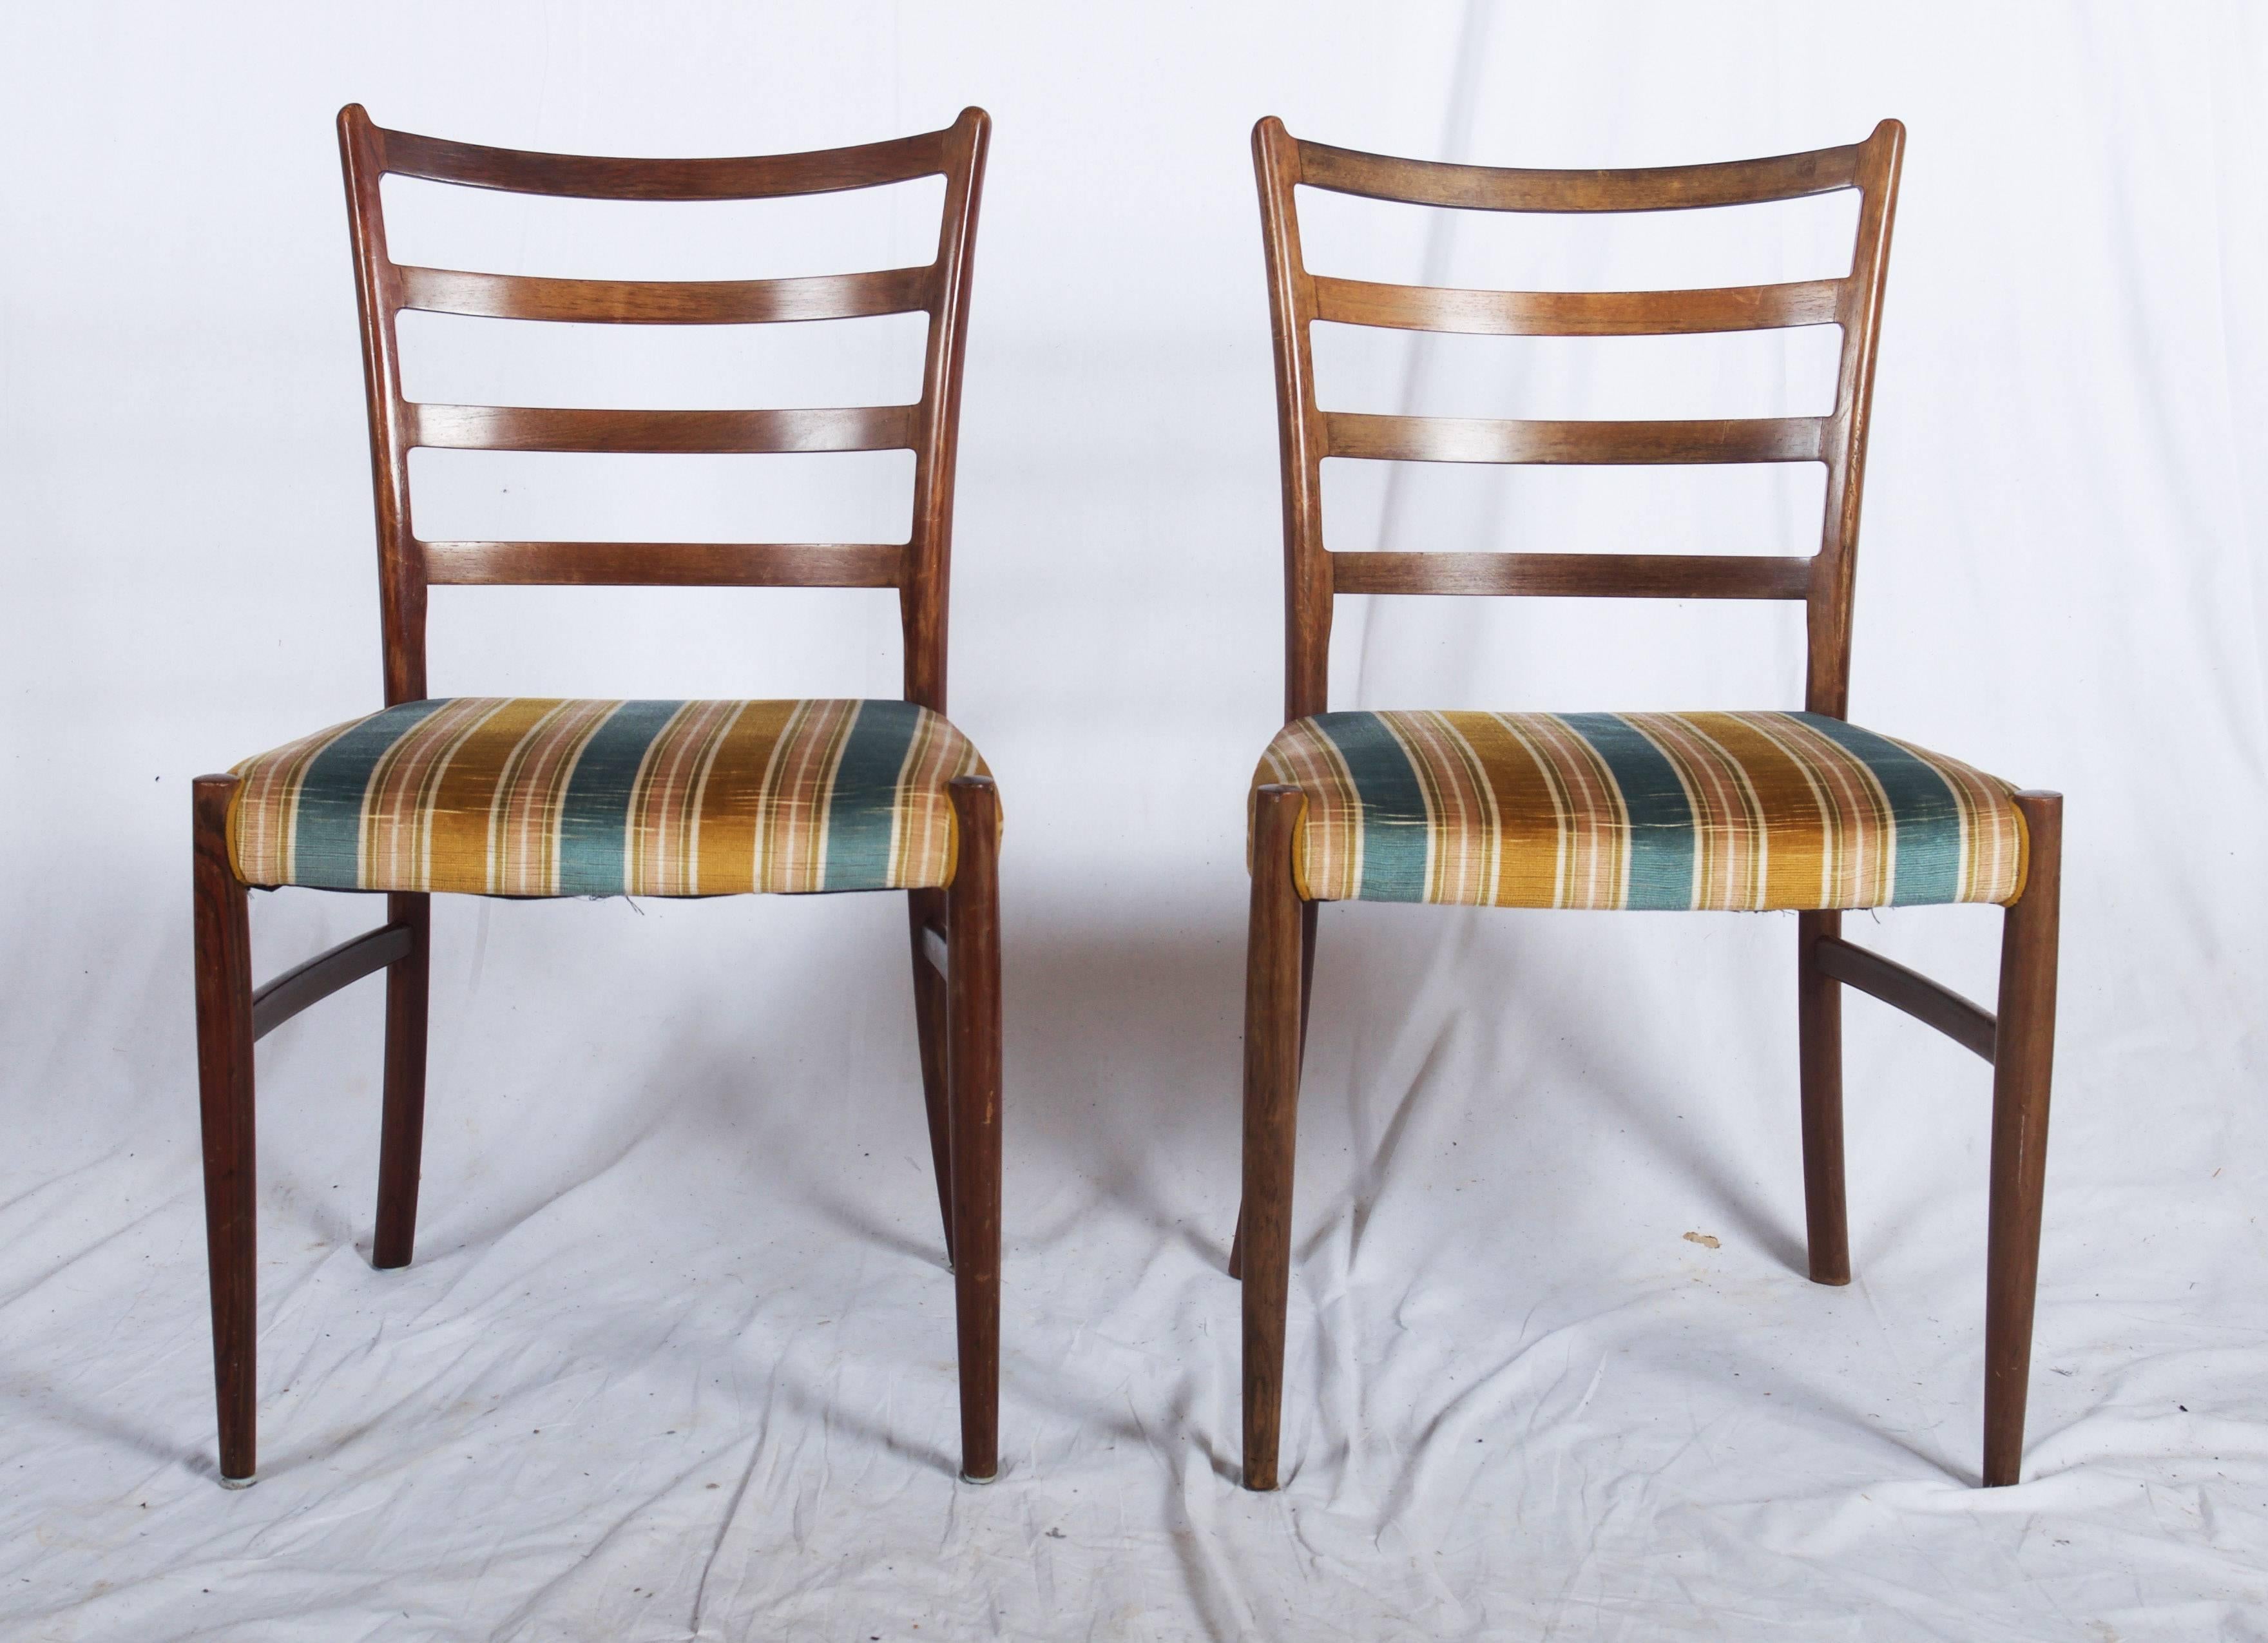 Ein Satz von vier Esszimmerstühlen, entworfen von Johannes Andersen und hergestellt von SVA Møbler, Dänemark, um 1960, aus massivem Hartholz. Diese Stühle sind alle in ausgezeichnetem Zustand und das Hartholz hat eine warme Honigfarbe.
Auf Wunsch